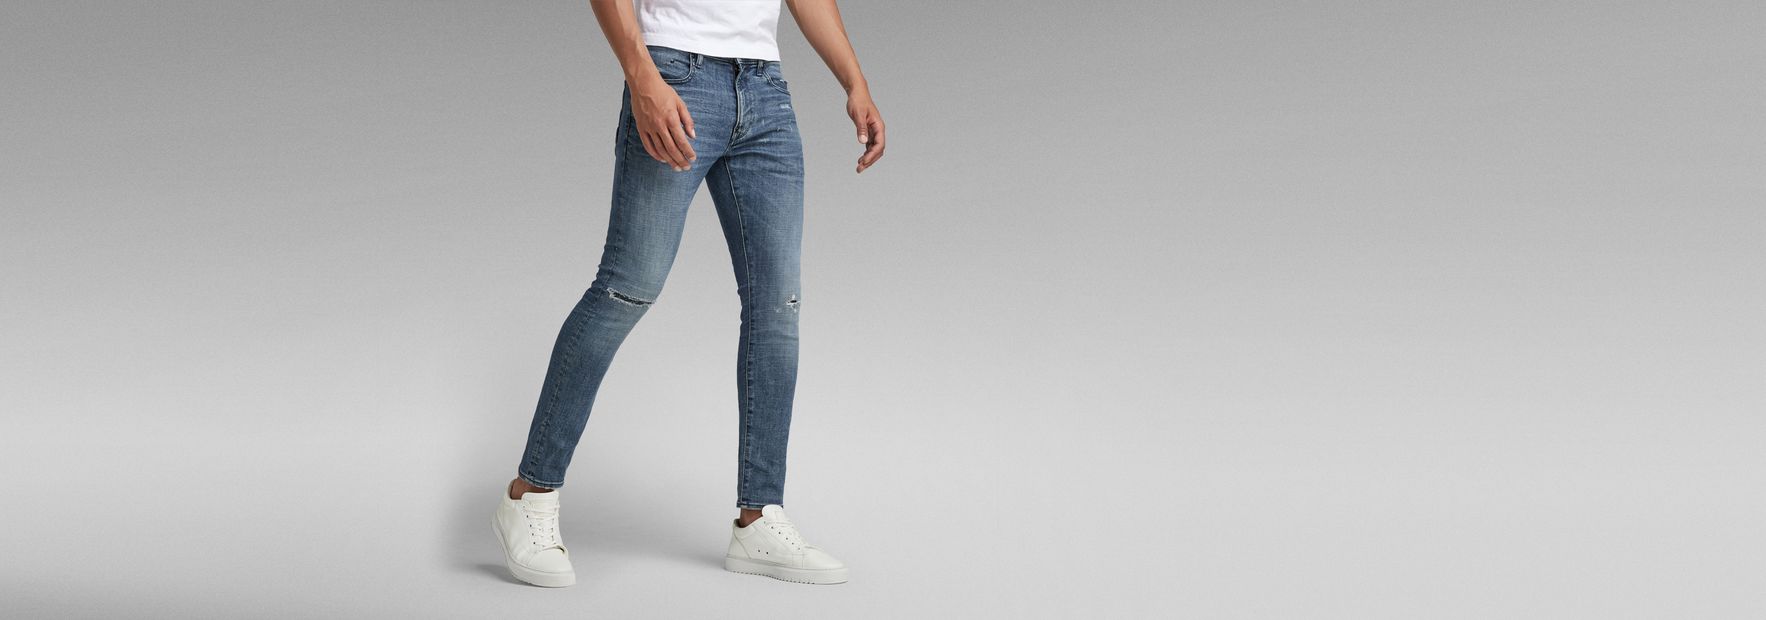 Revend FWD Skinny Jeans | Medium blue | G-Star RAW® US